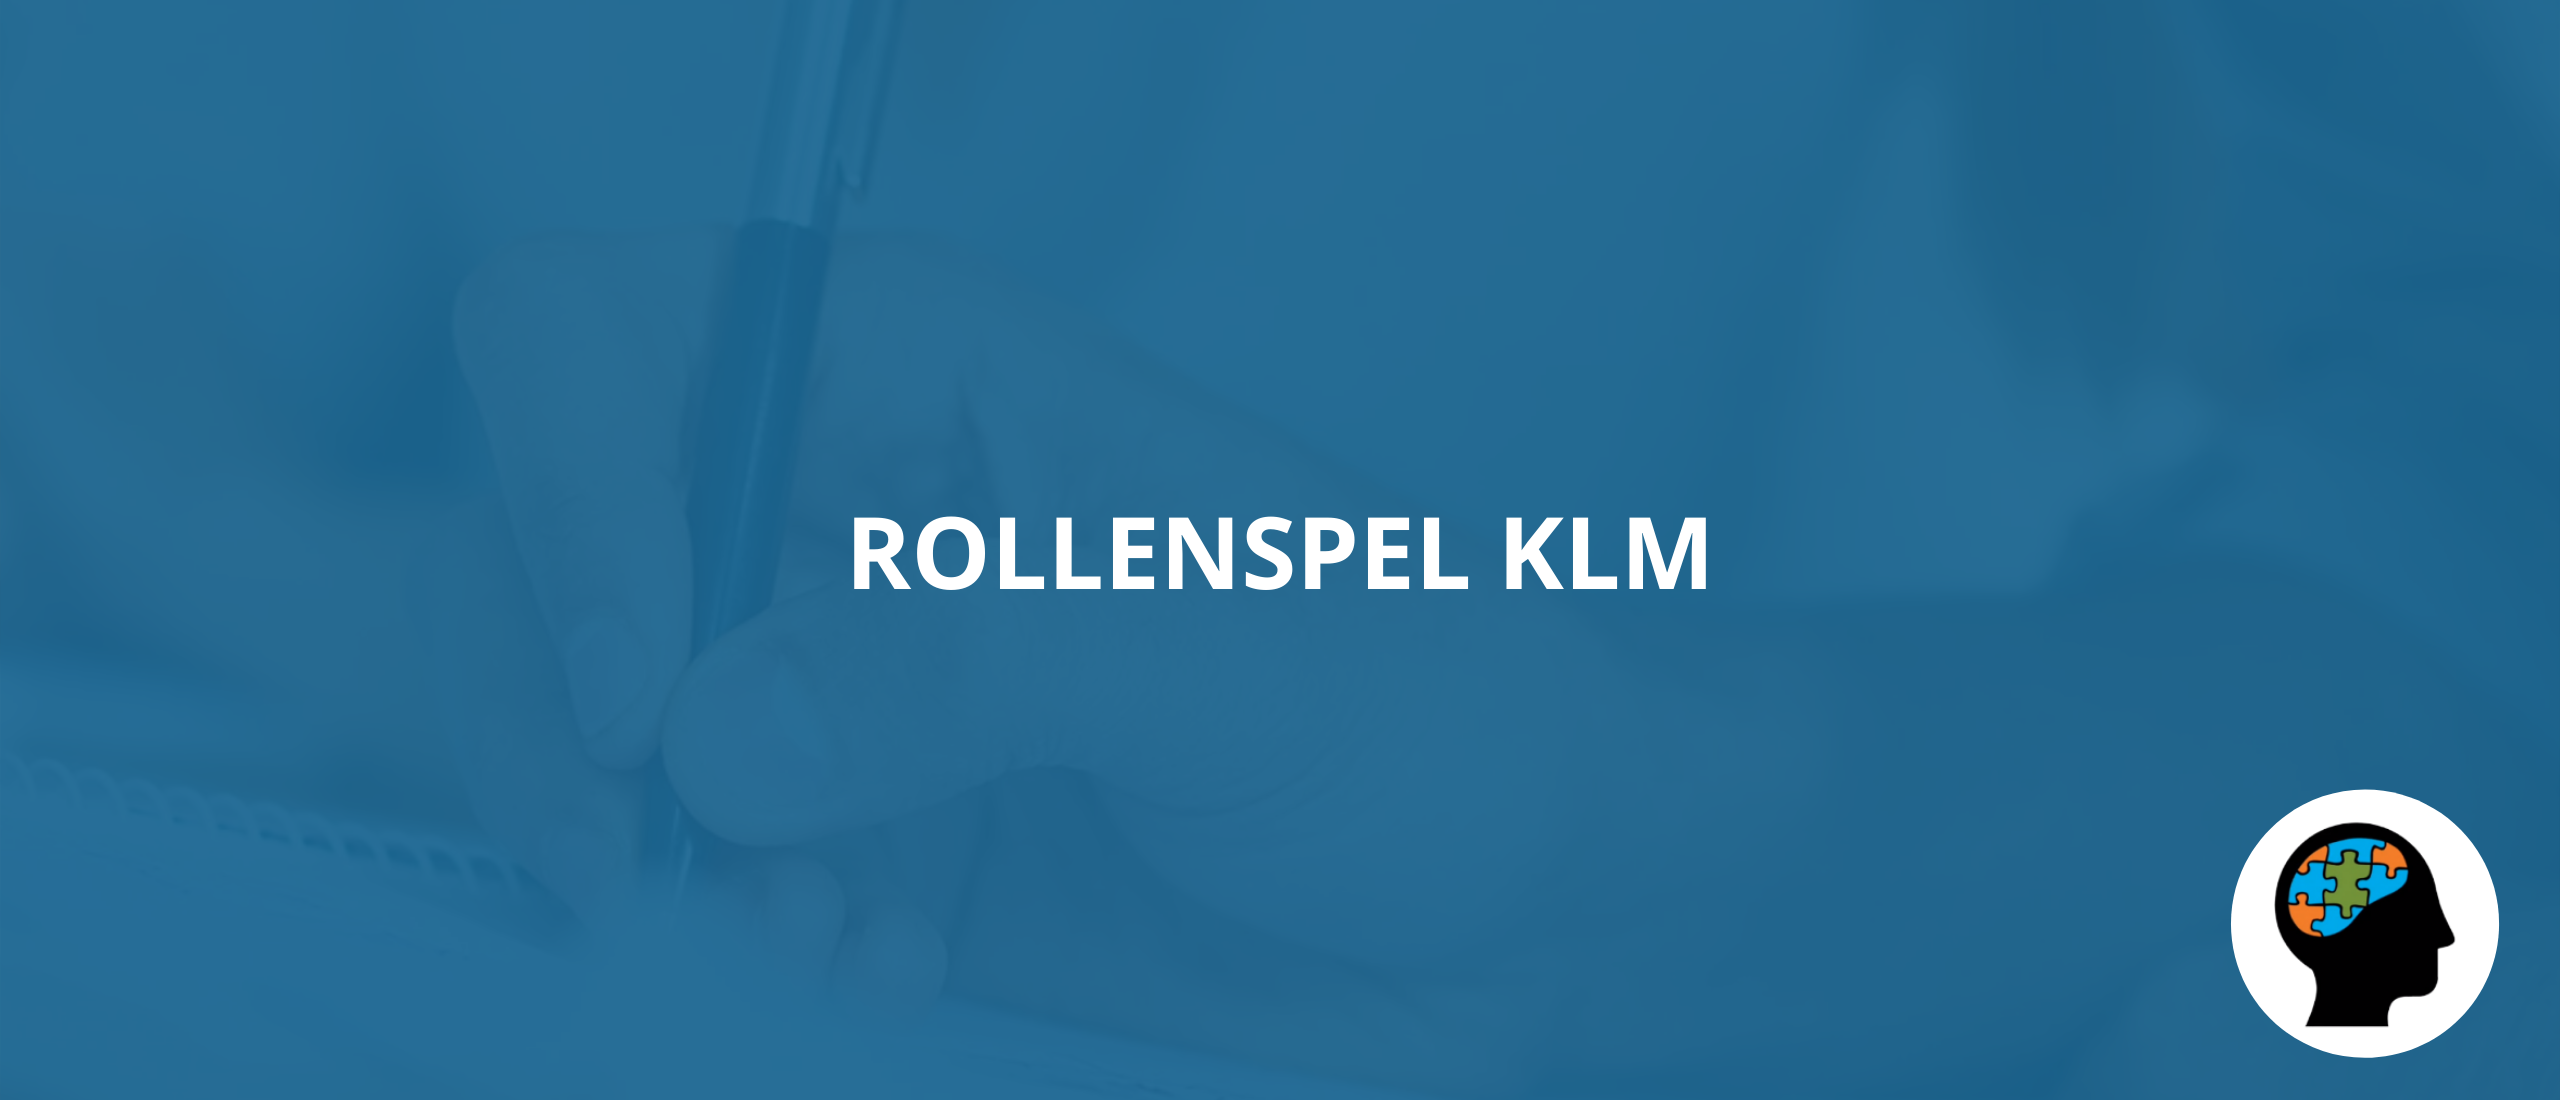 Rollenspel KLM